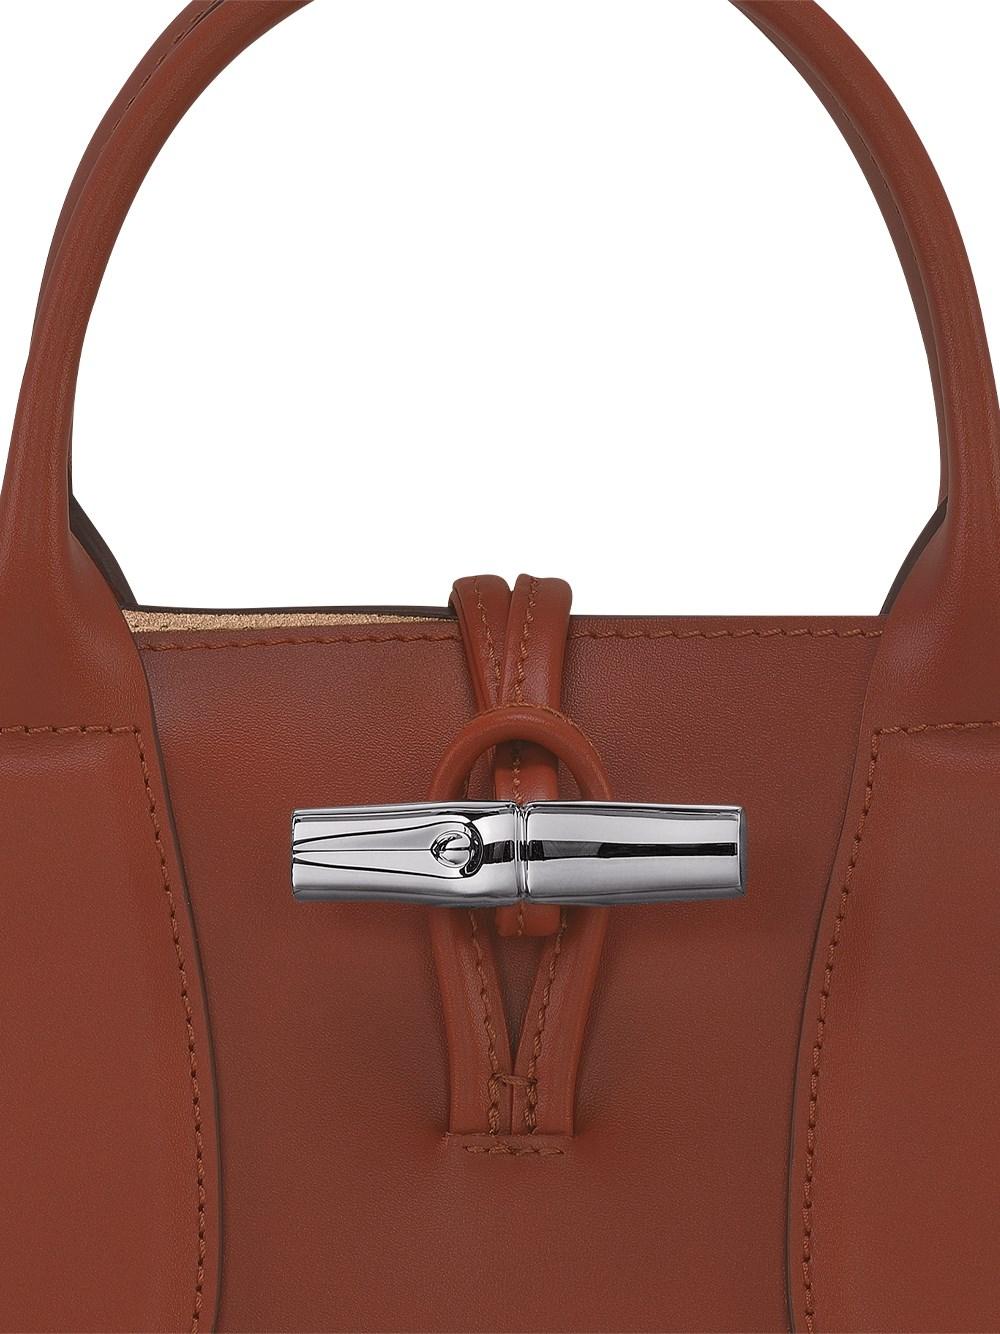 Longchamp `roseau Box` Small Handbag in Brown